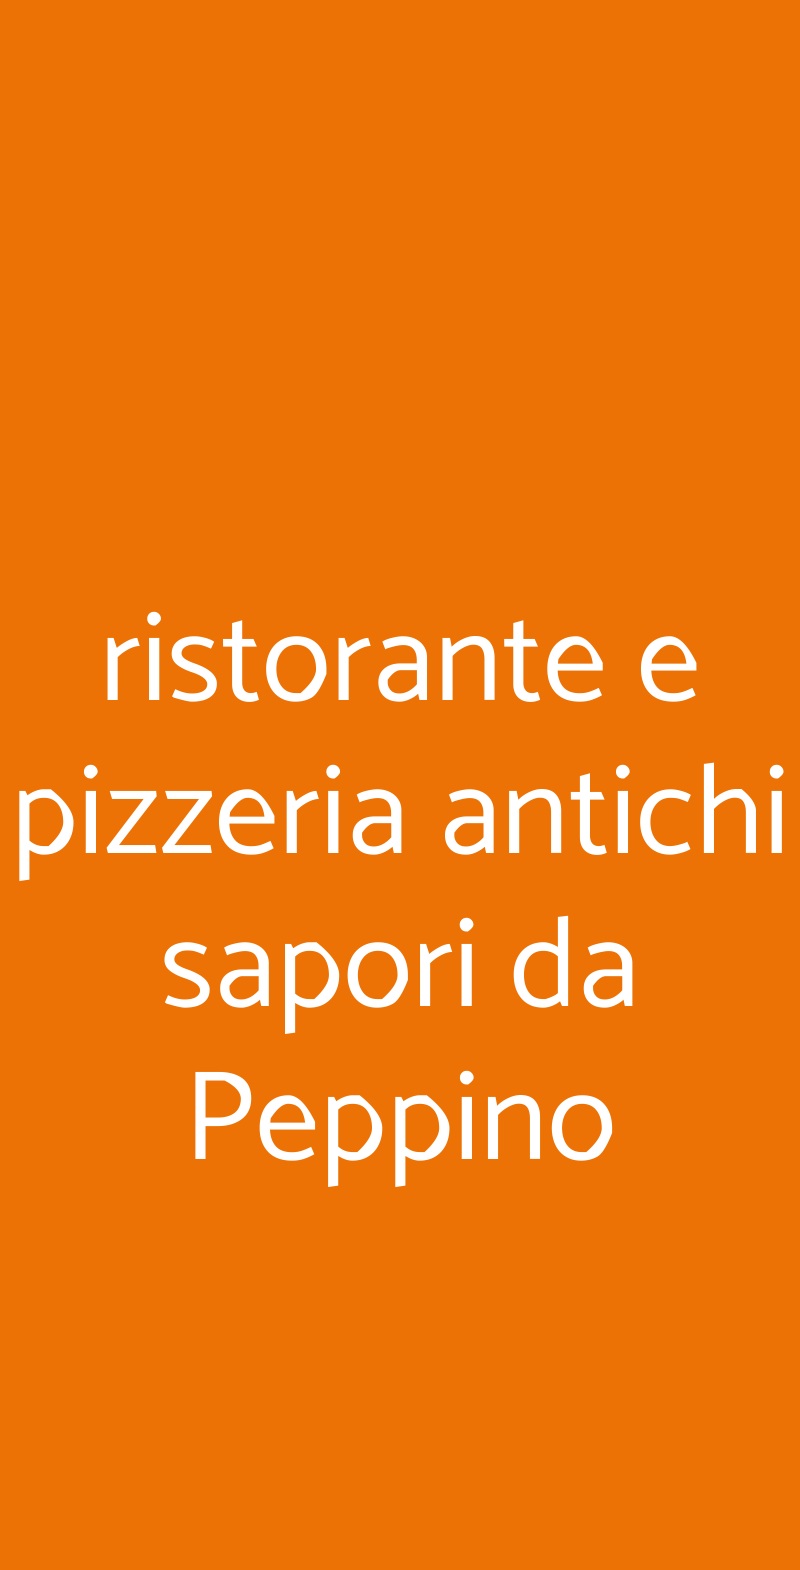 ristorante e pizzeria antichi sapori da Peppino Napoli menù 1 pagina